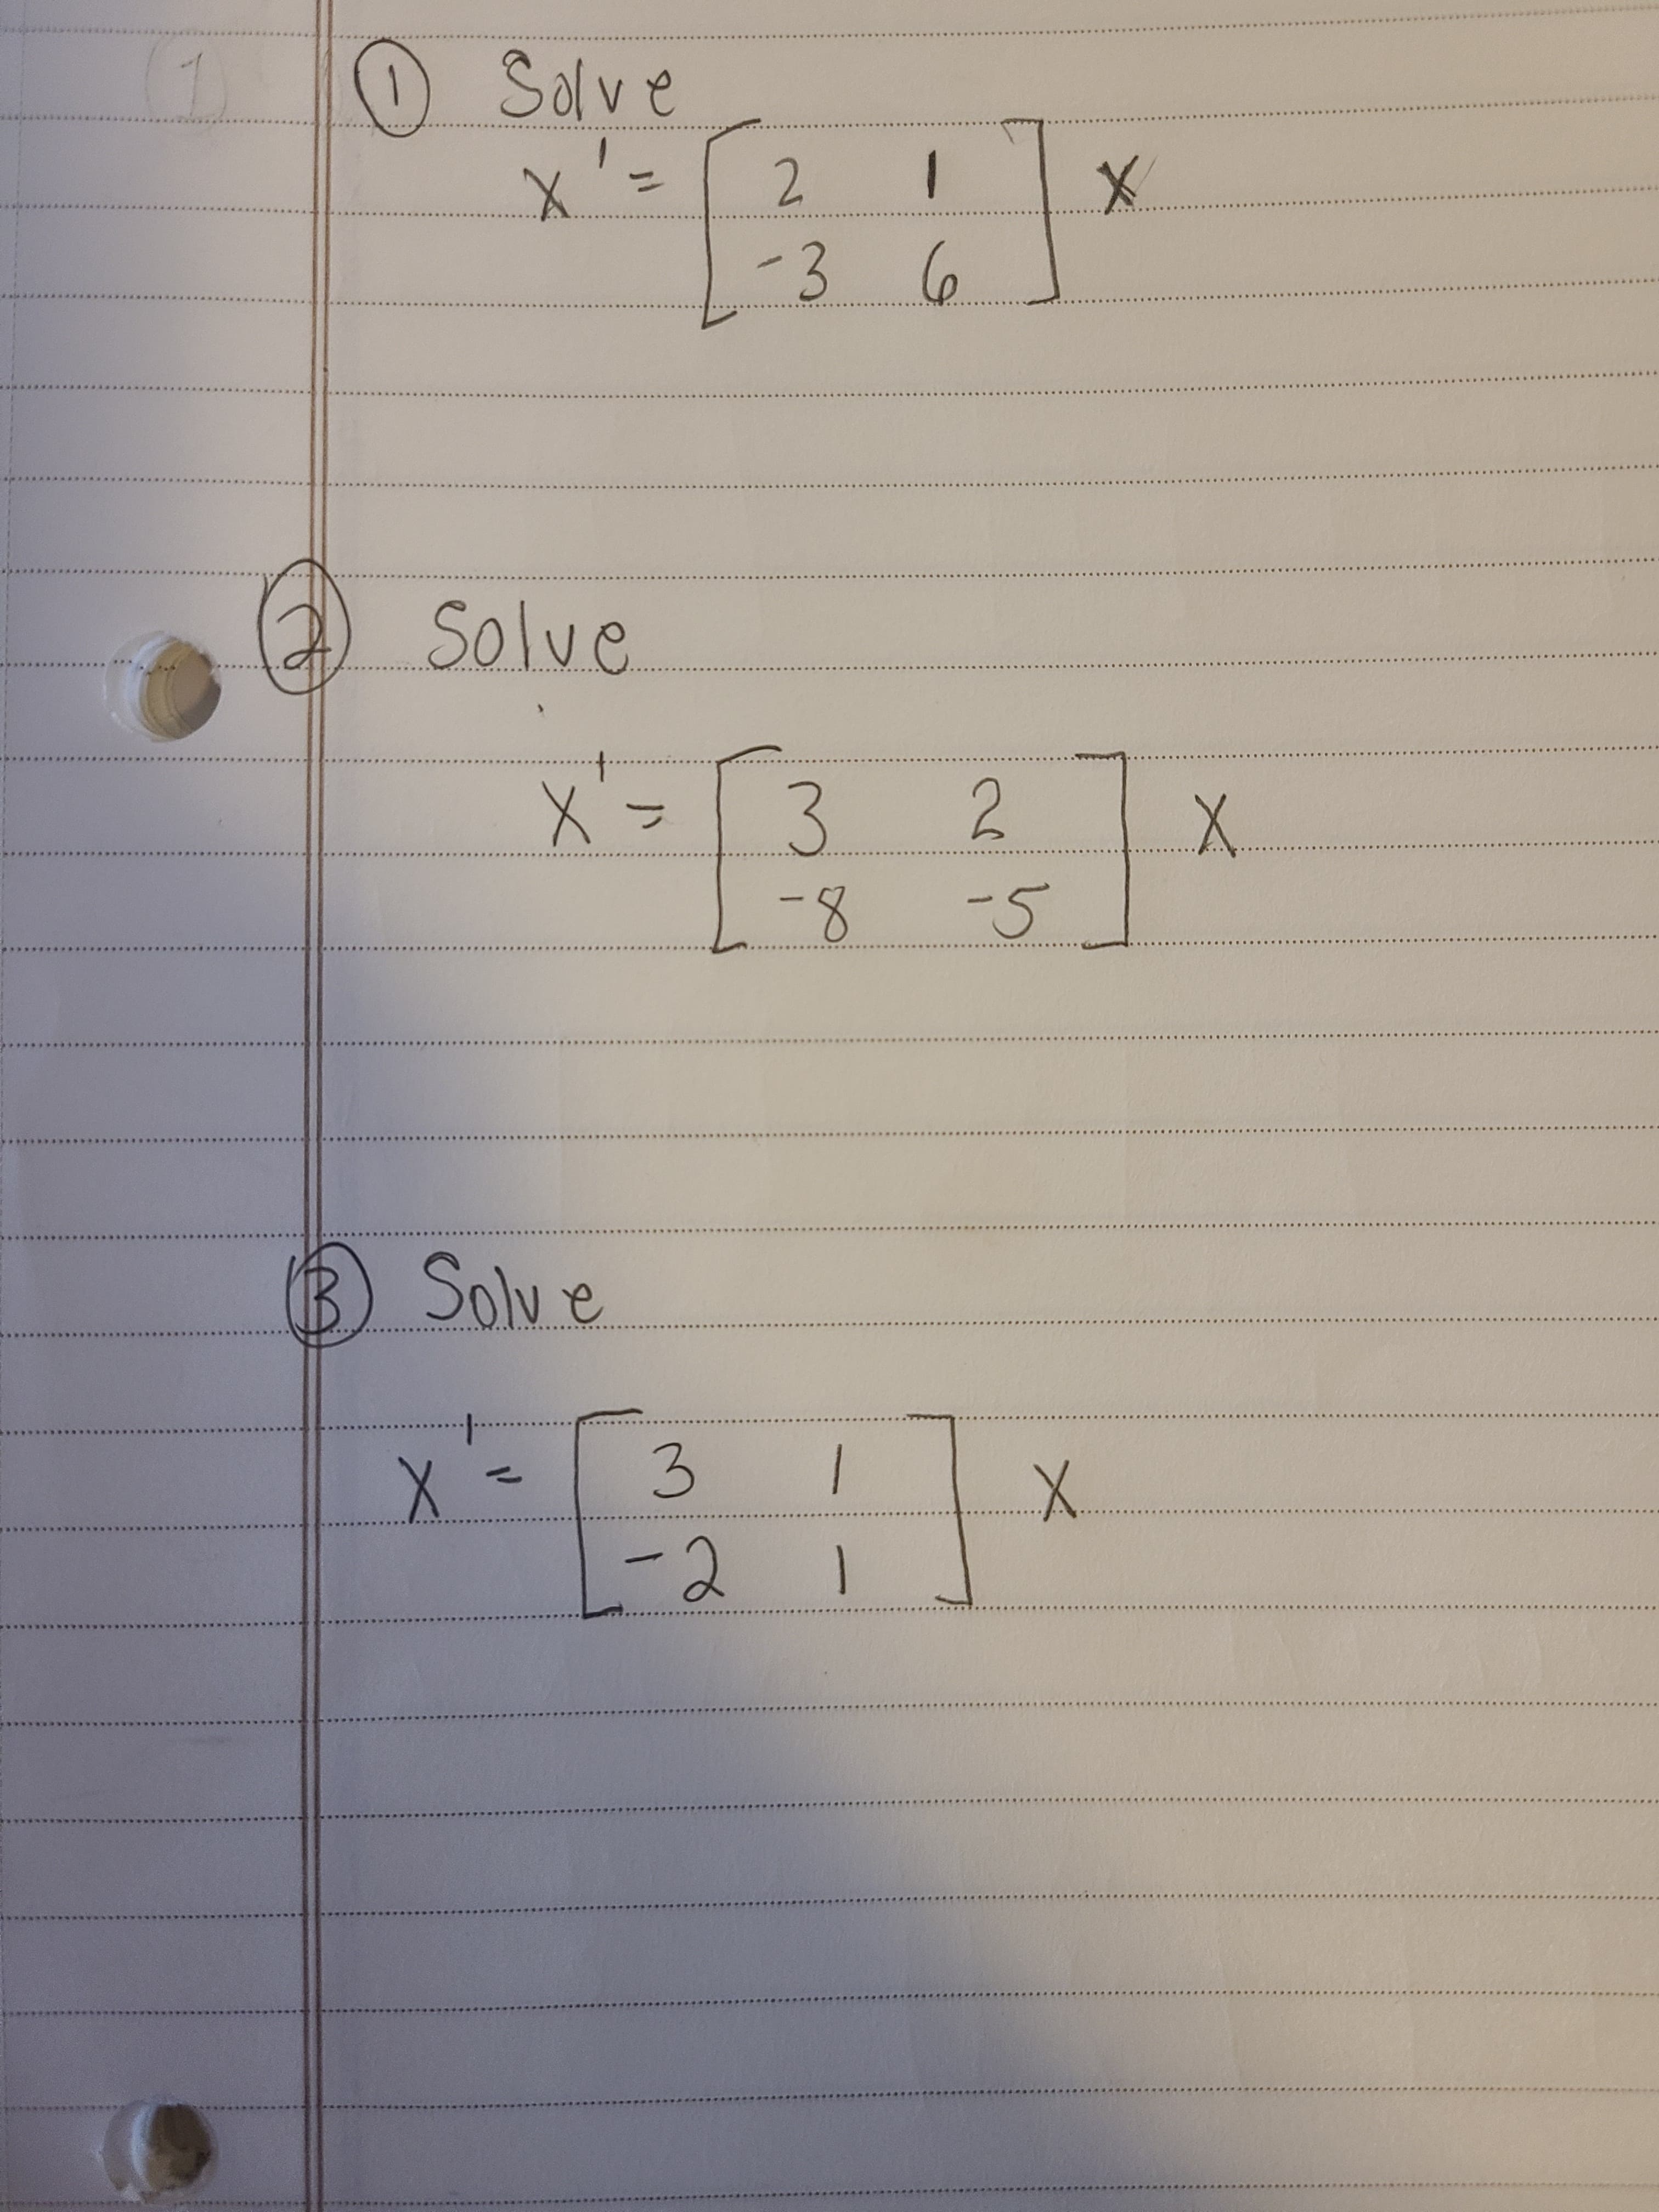 (1) Solve
x'=
2.
-36
